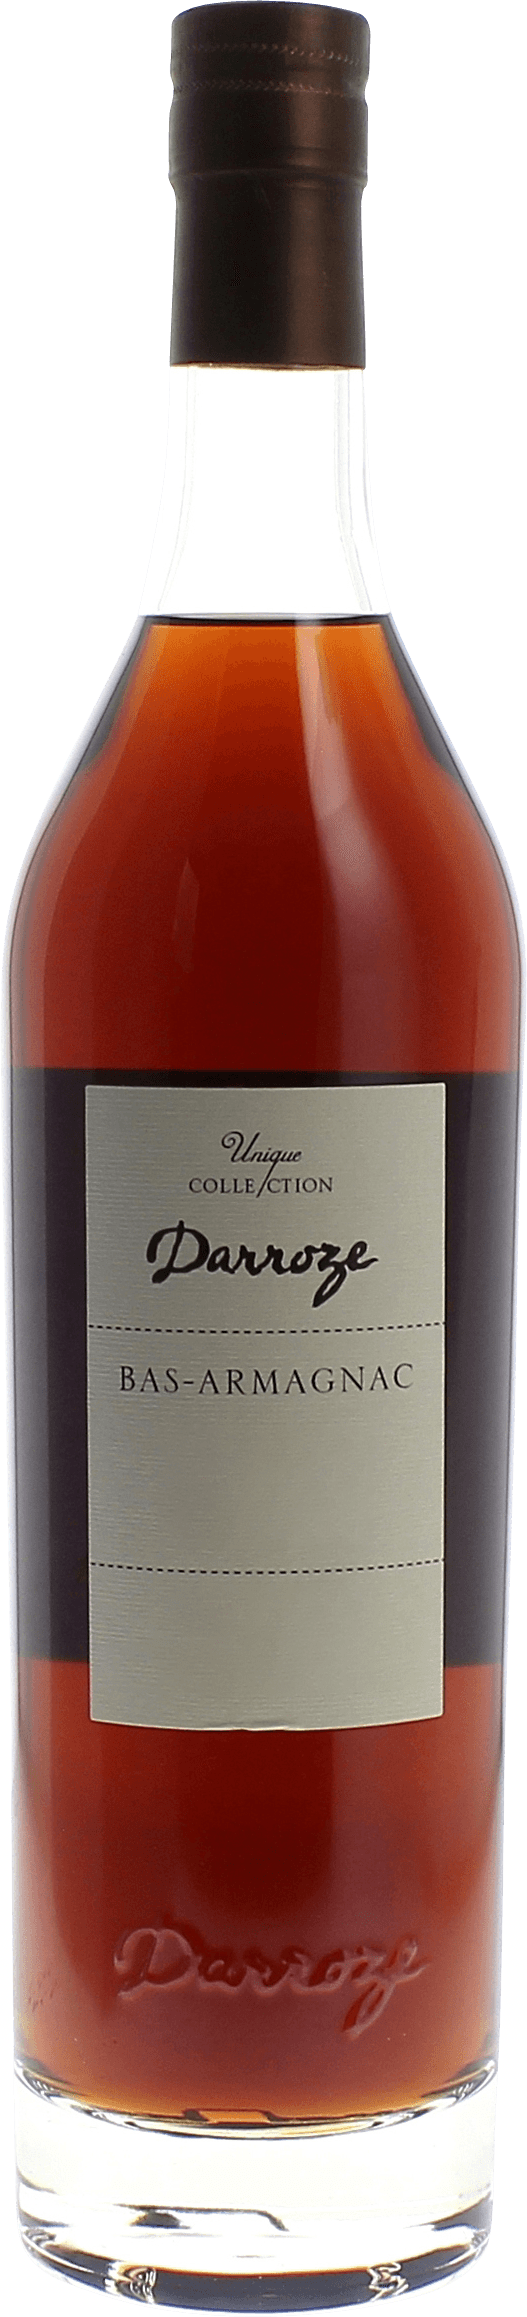 Domaine de gaube 44,5 1966  Bas Armagnac, DARROZE  Francis Bas Armagnac